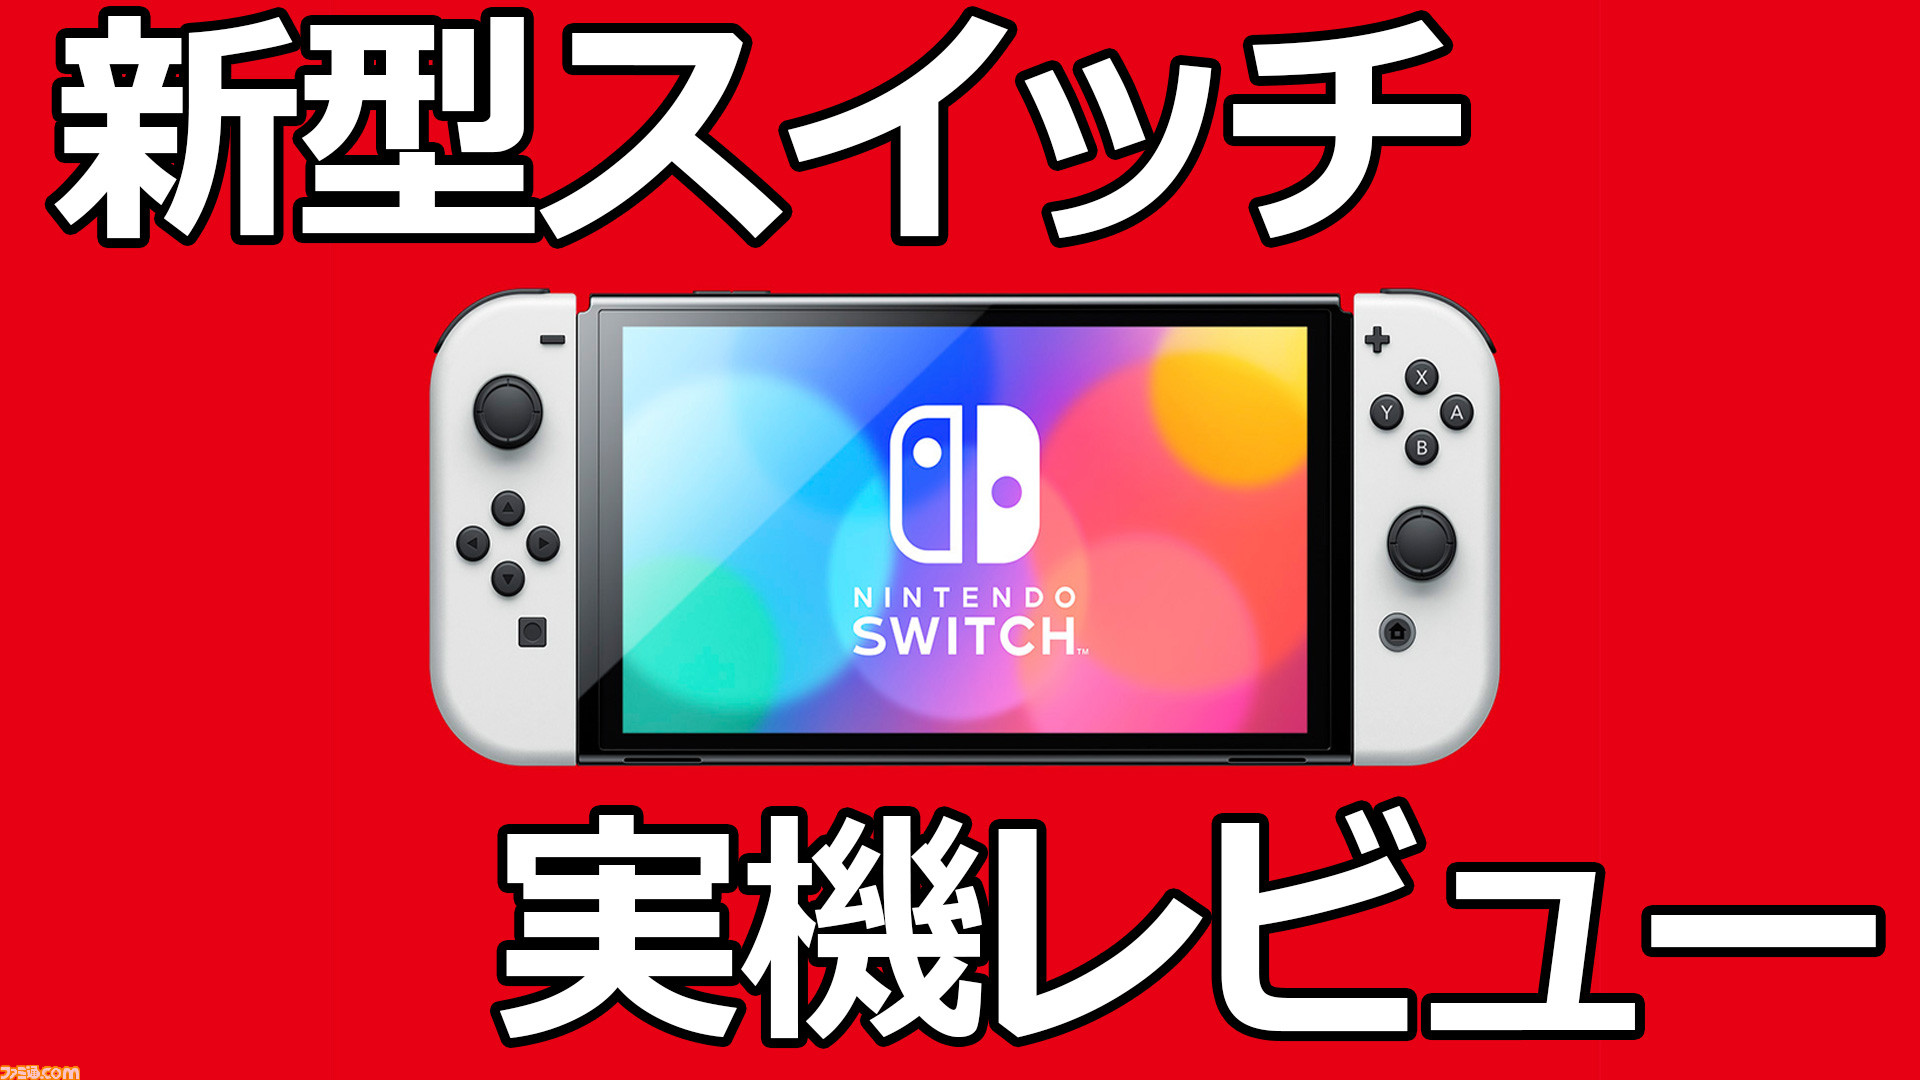 新型Nintendo Switch先行体験レビュー。有機ELディスプレイの発色と幅広スタンドの安定感が秀逸 |  ゲーム・エンタメ最新情報のファミ通.com